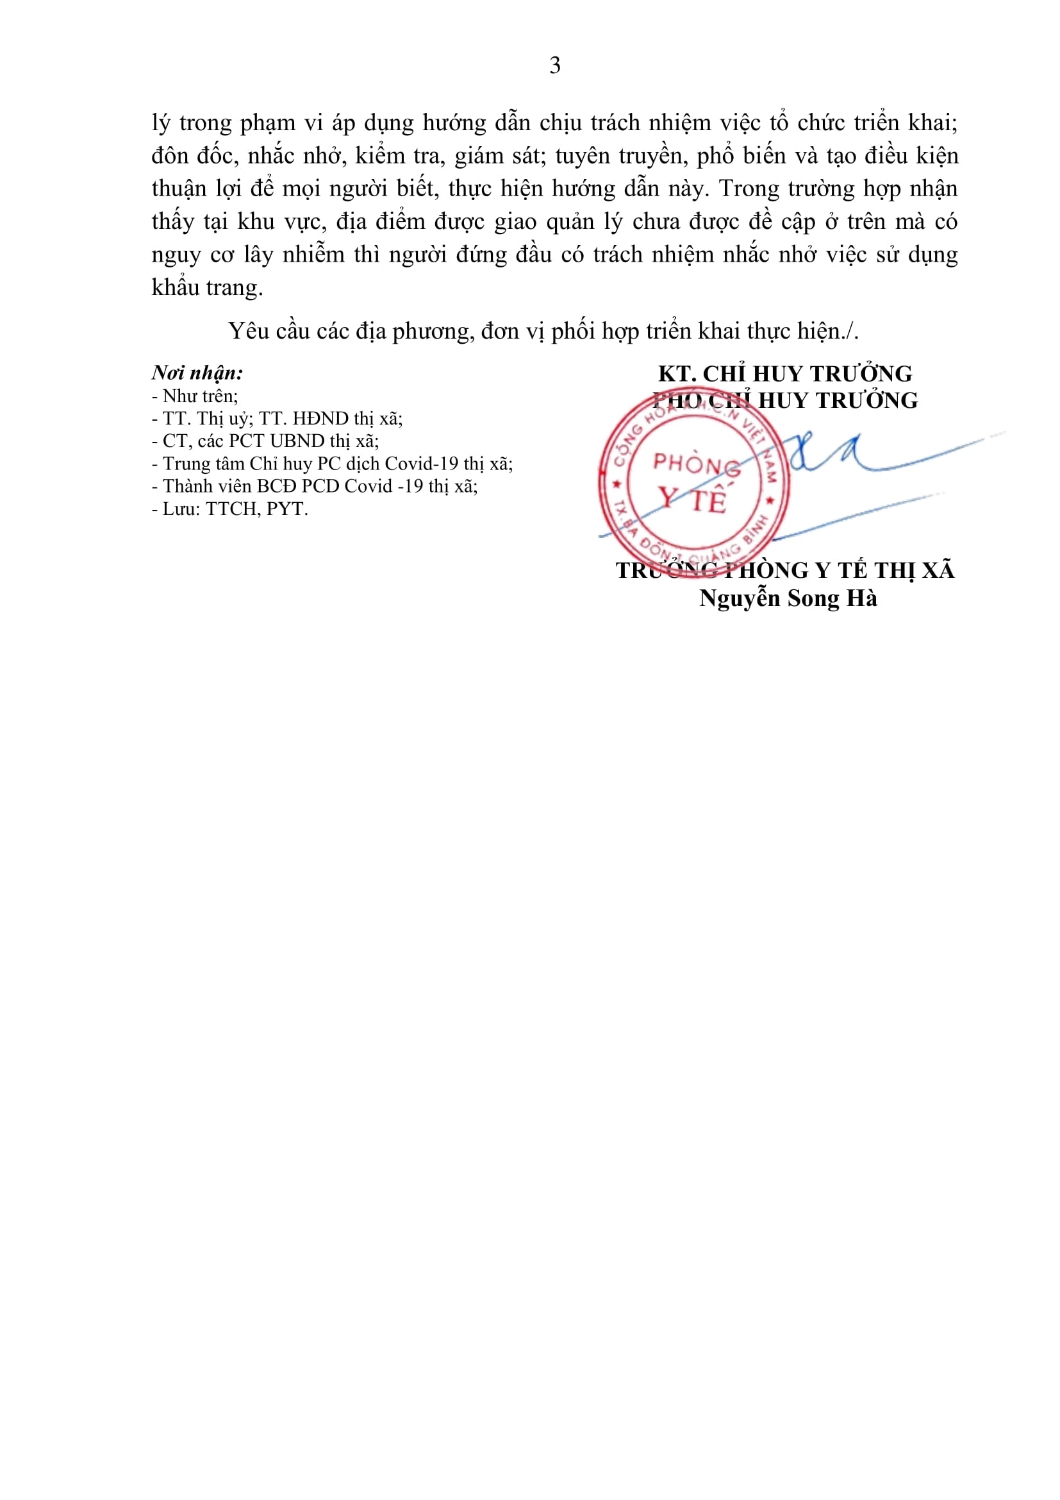 CV HD DEO KHAU TRANG PC DICH COVID 19 NOI CONG CONG 13 9(13 09 2022 16h29p15) signed 3